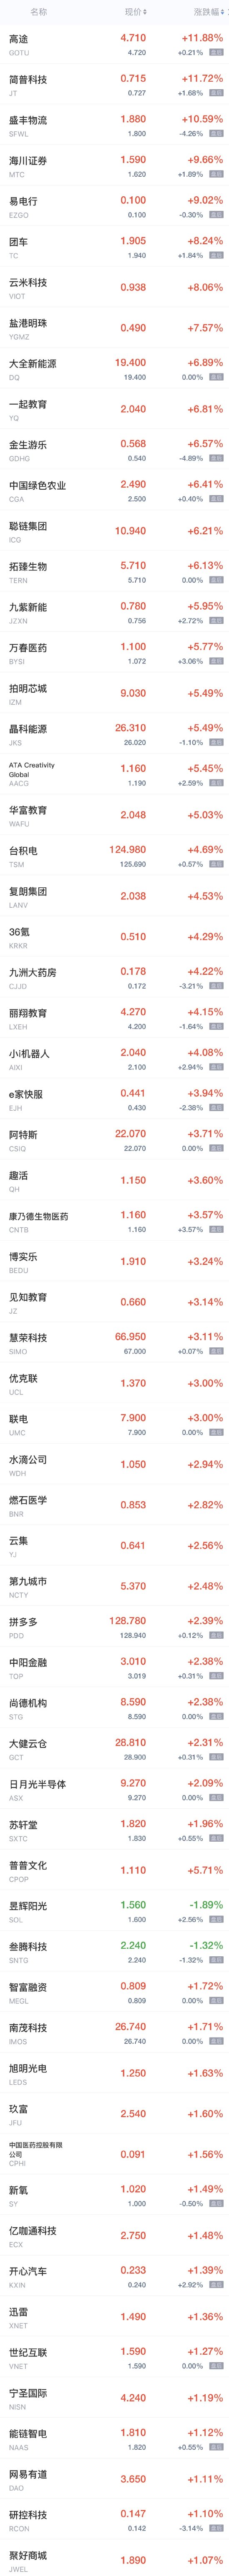 周三热门中概股普跌 阿里巴巴跌超5%，哔哩哔哩、京东、小鹏汽车跌超4%